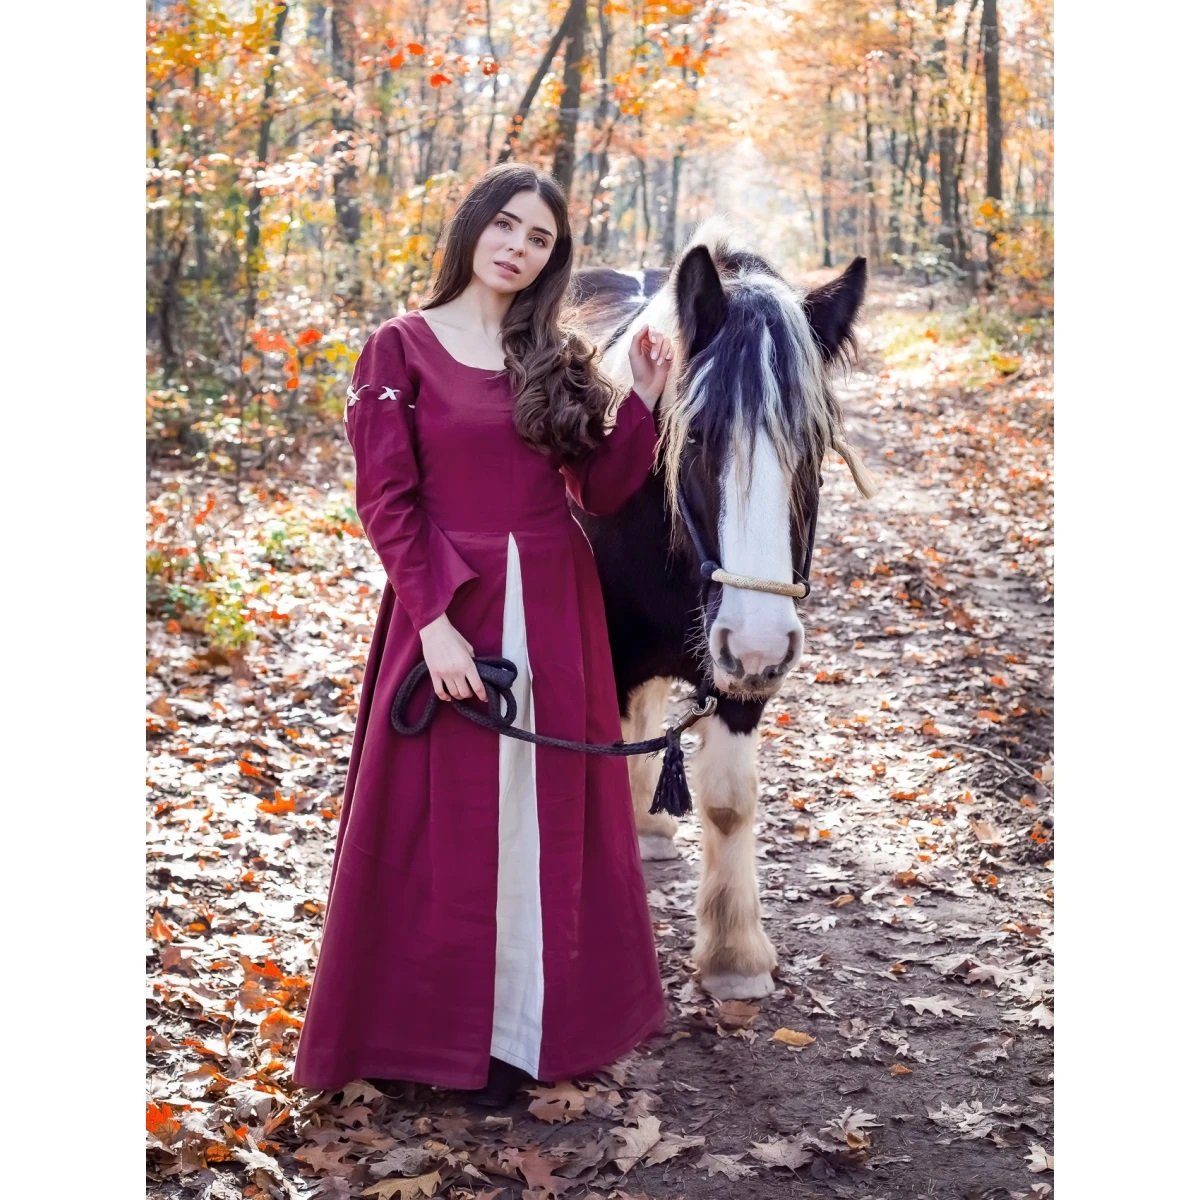 Leonardo Carbone Ritter-Kostüm Mittelalterliches Kleid Rot/Natur "Larina" XL